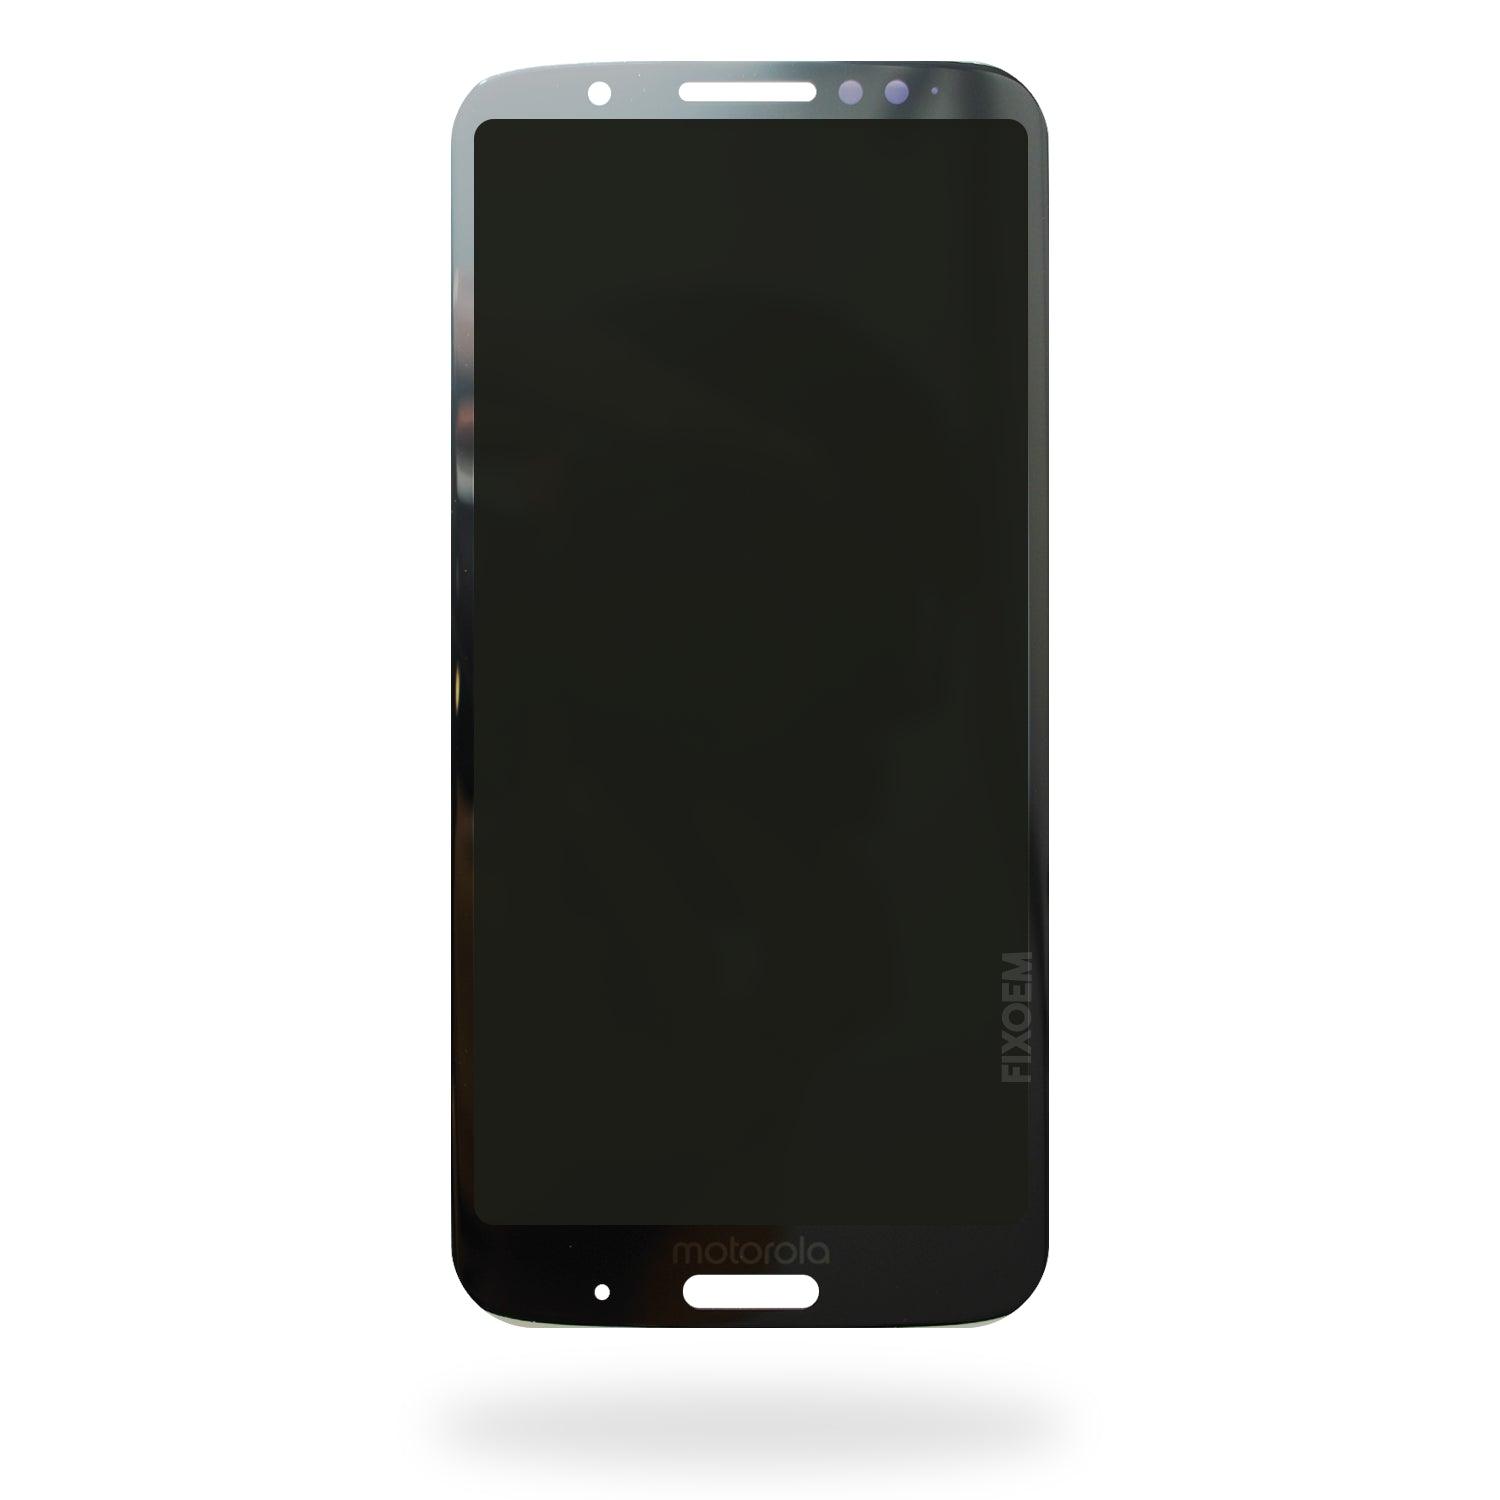 Display Moto G6 Plus Xt1926 IPS a solo $ 320.00 Refaccion y puestos celulares, refurbish y microelectronica.- FixOEM